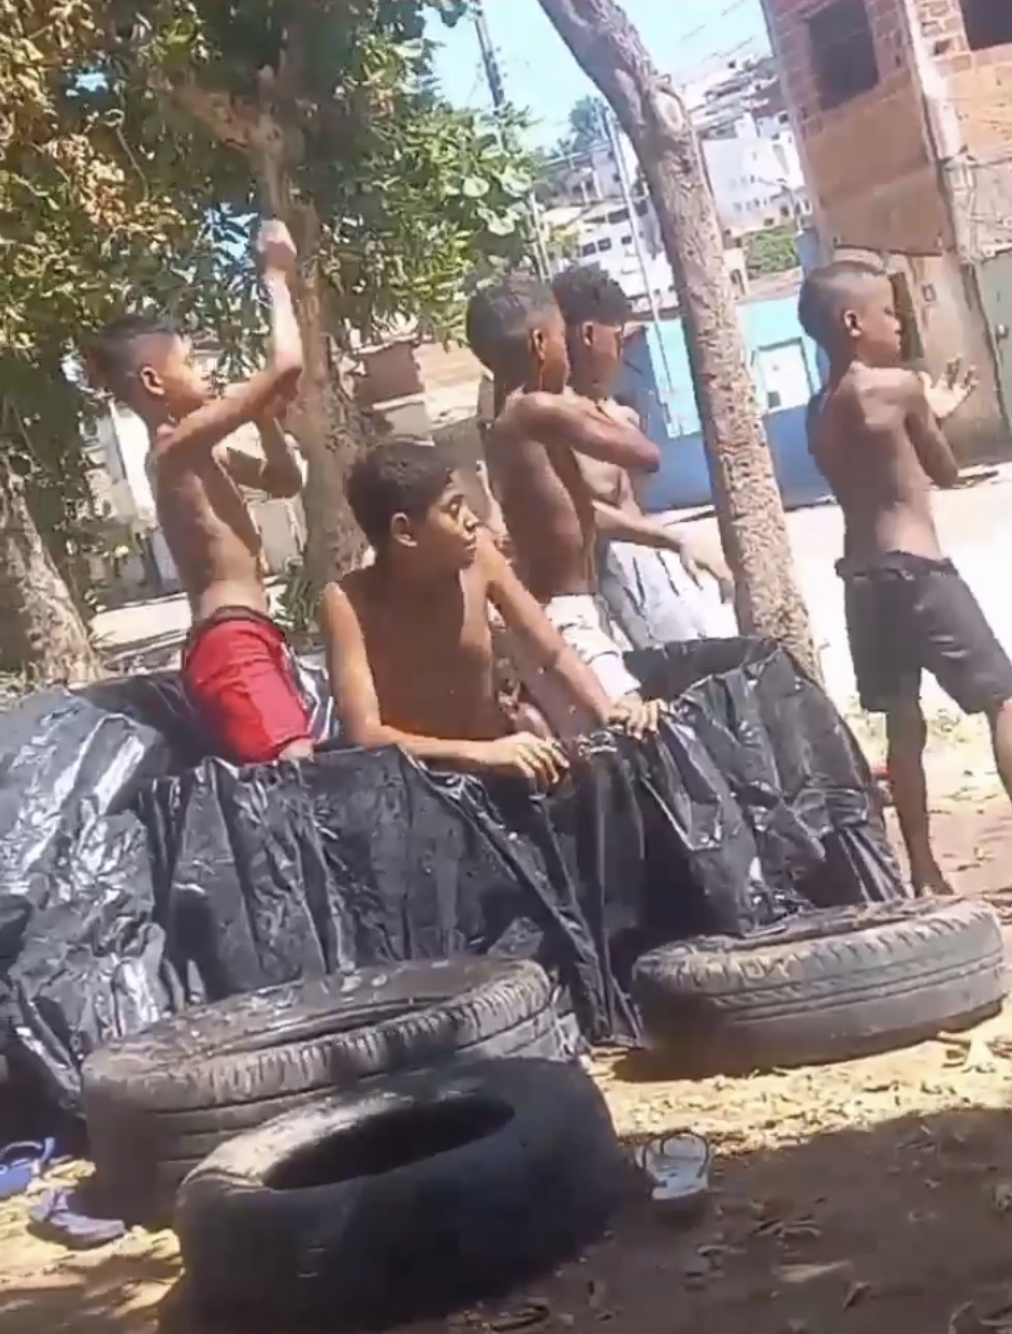 Tá quente aí? Aos 36• crianças improvisam “piscina” de lona em rua no São Jacinto para refrescar, em Teó